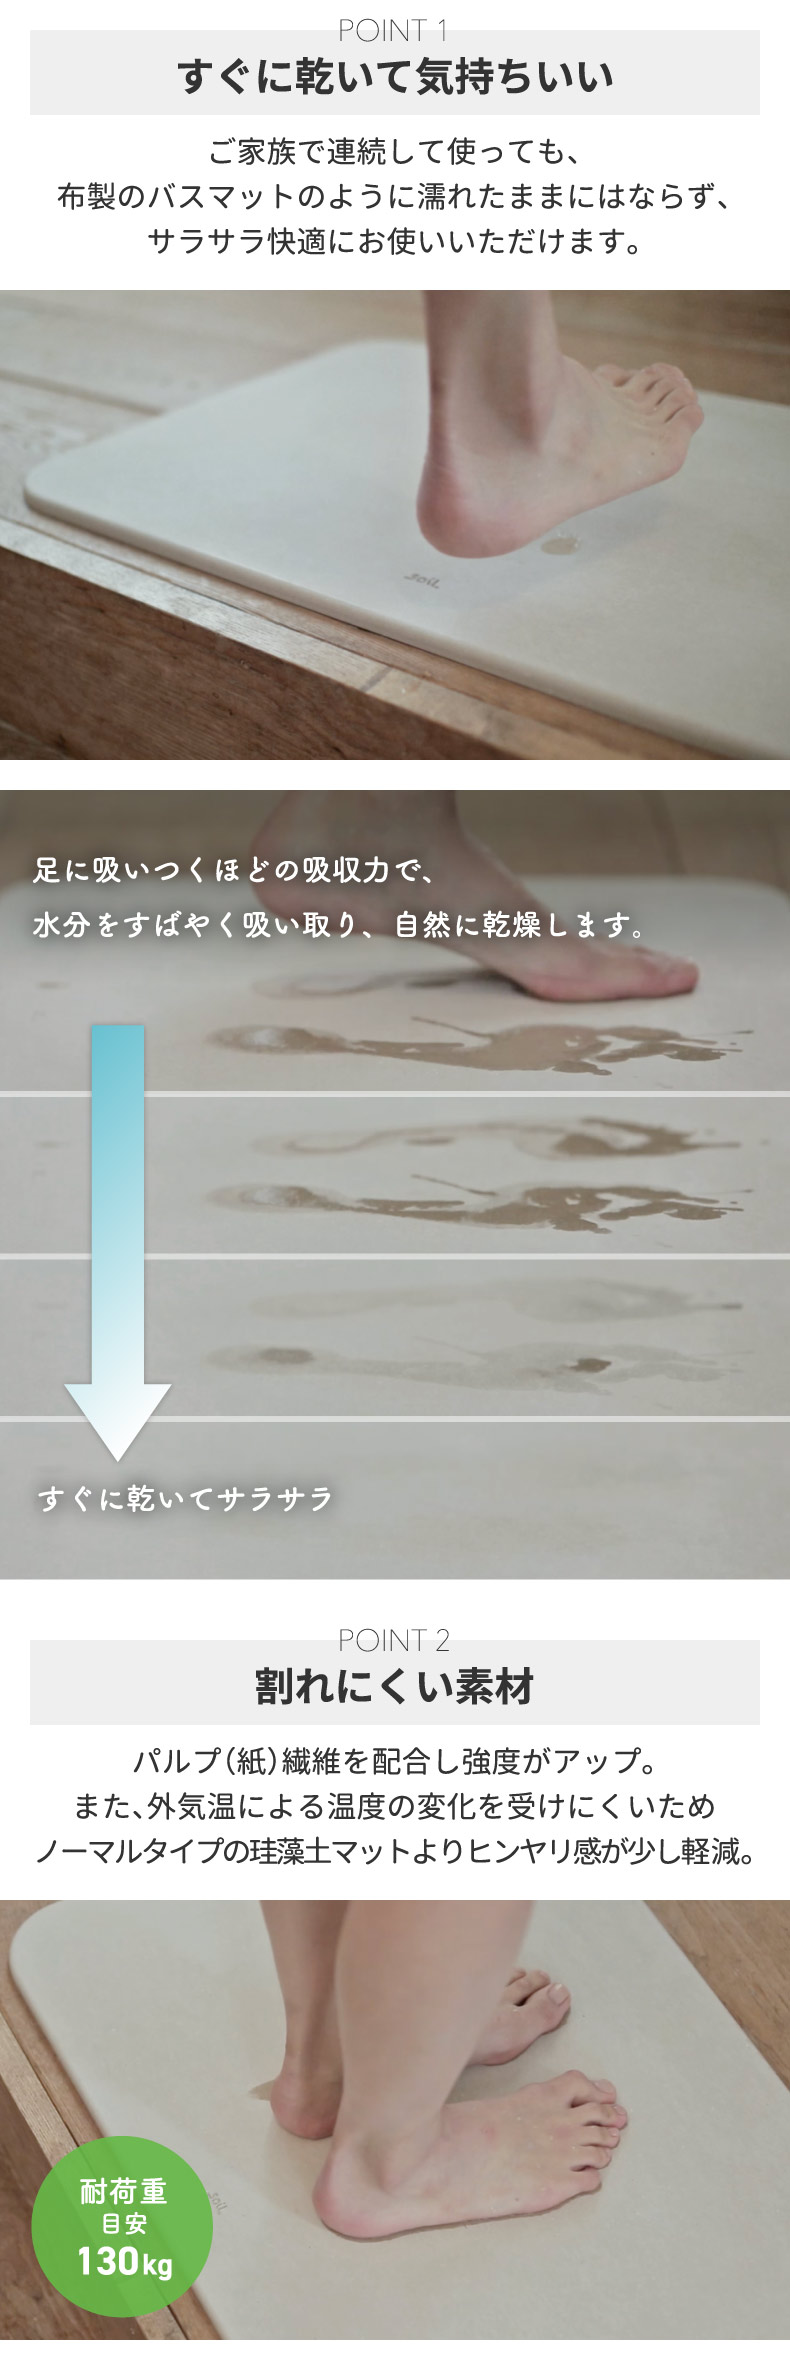 soil バスマット ライト 日本製 珪藻土 風呂マット 足拭きマット 軽量